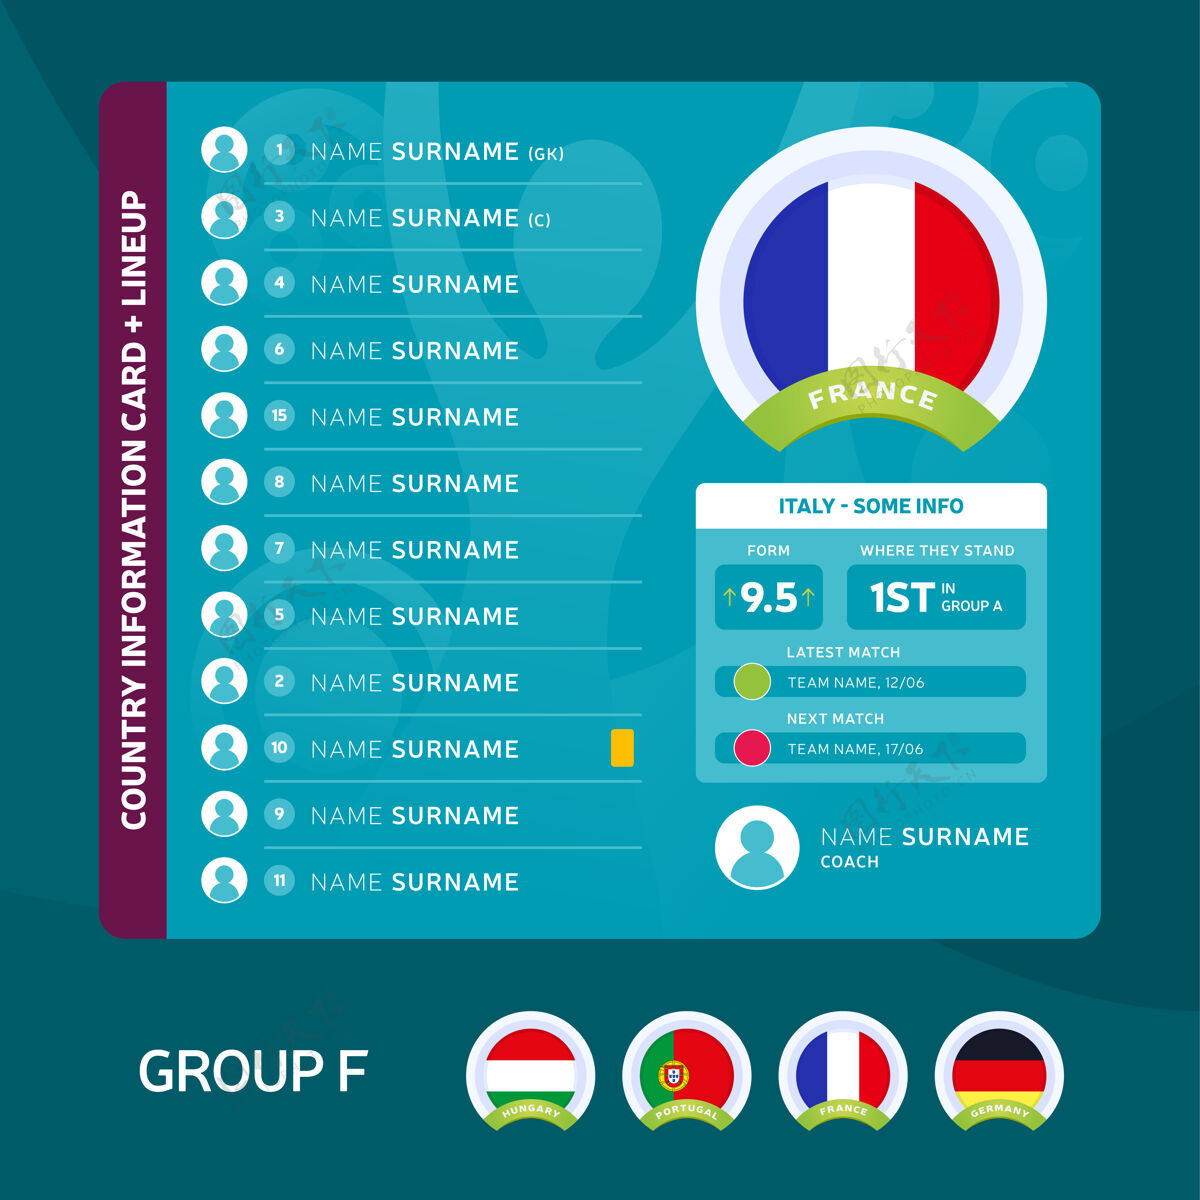 比赛法国团体足球赛决赛阶段球队统计打赌